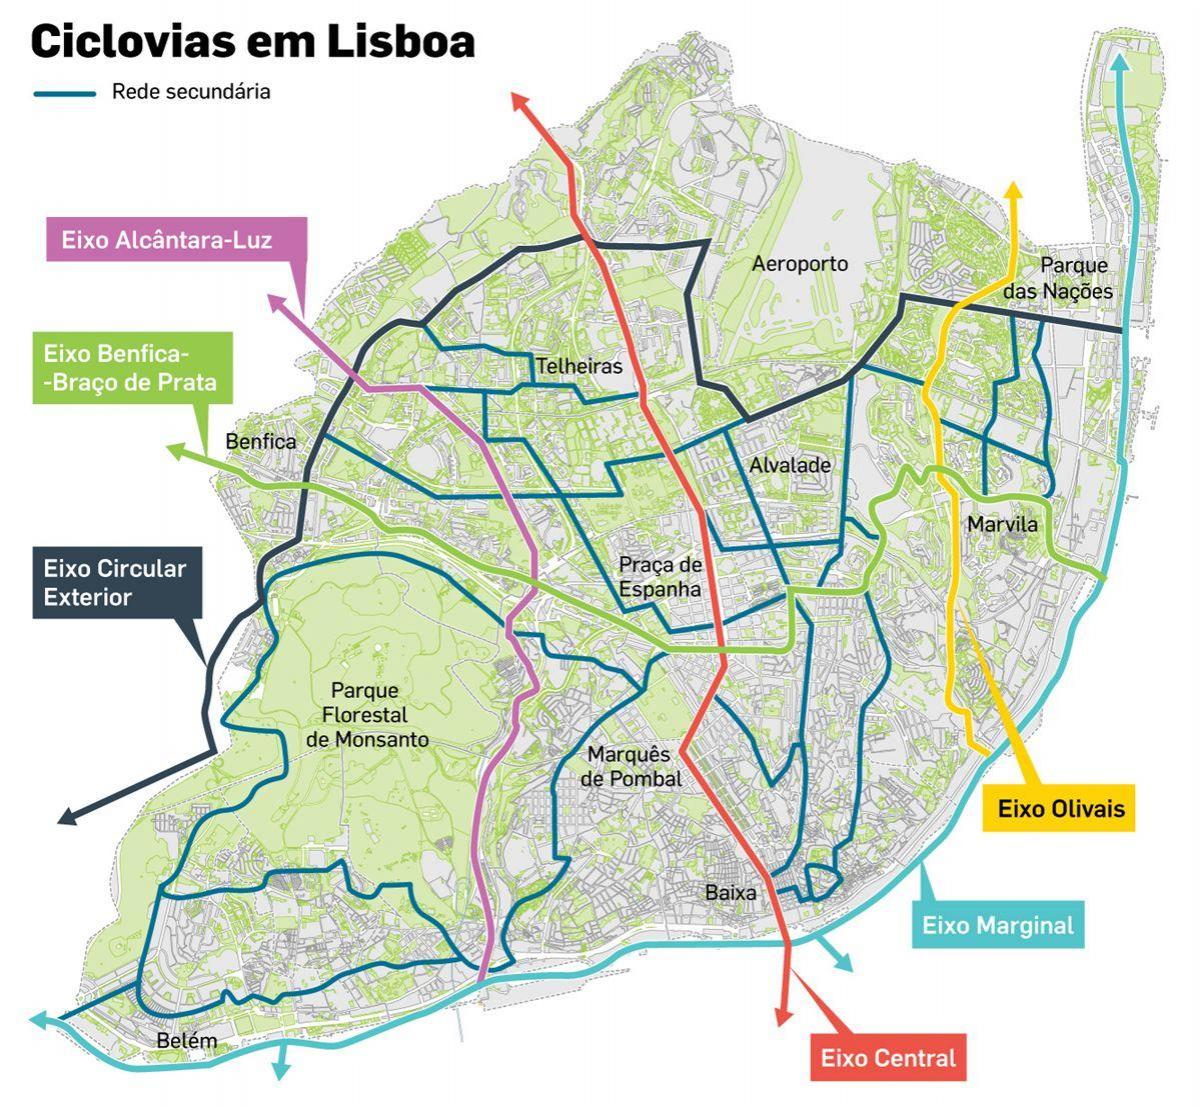 Lisbon bike lane map